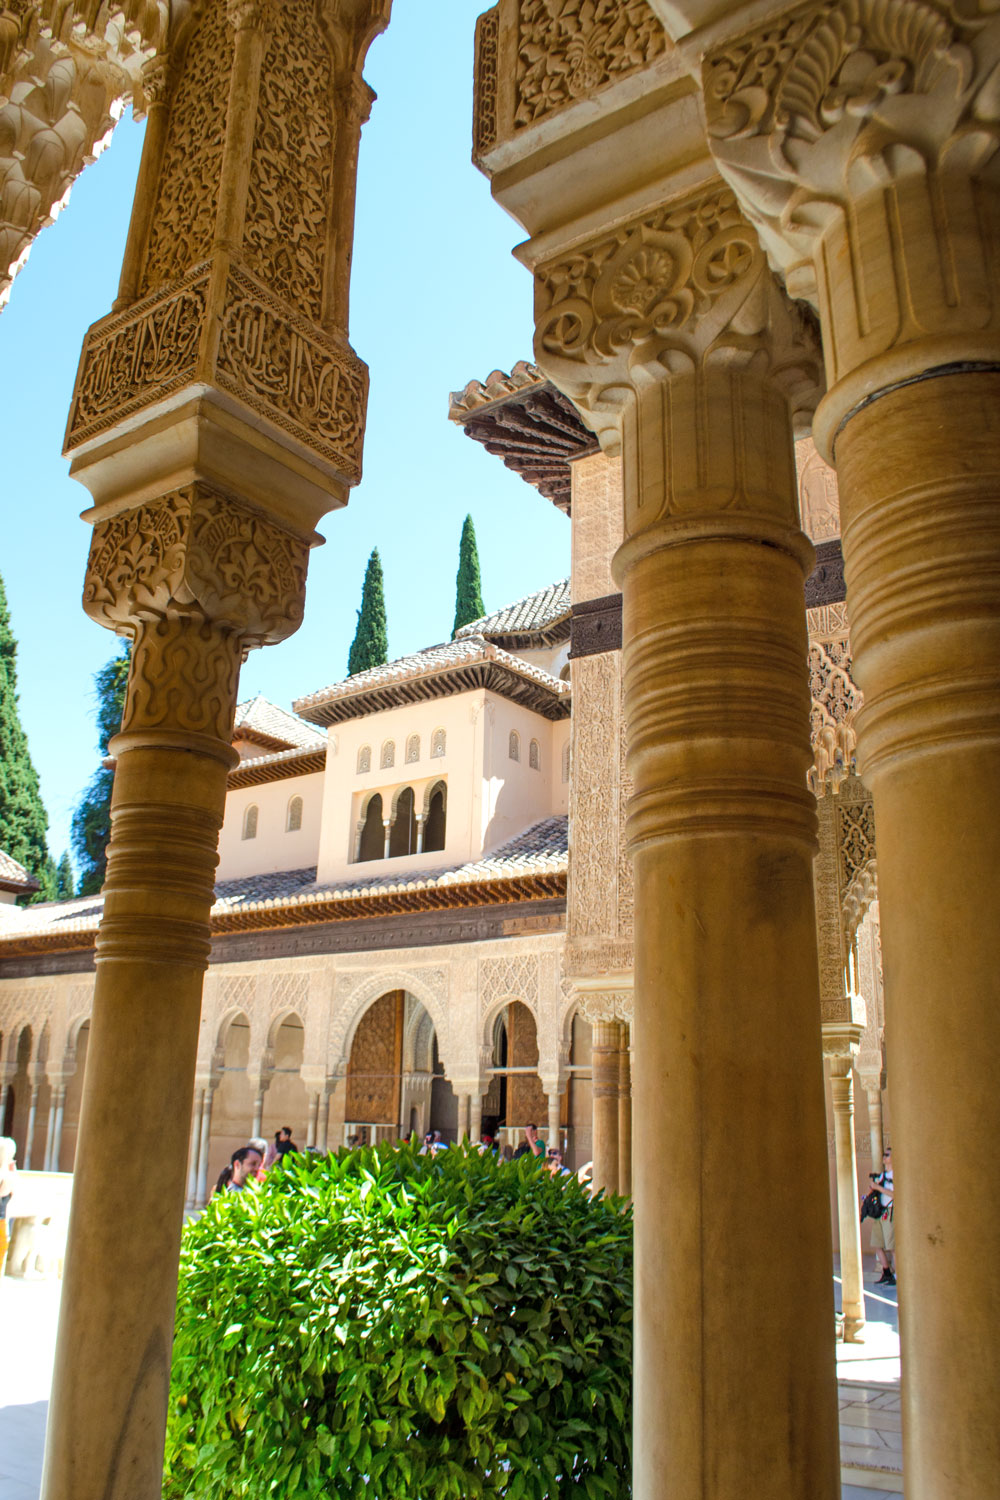 [unbezahlte werbung]Weltkulturerbe Alhambra -Die Paläste der Alhambra